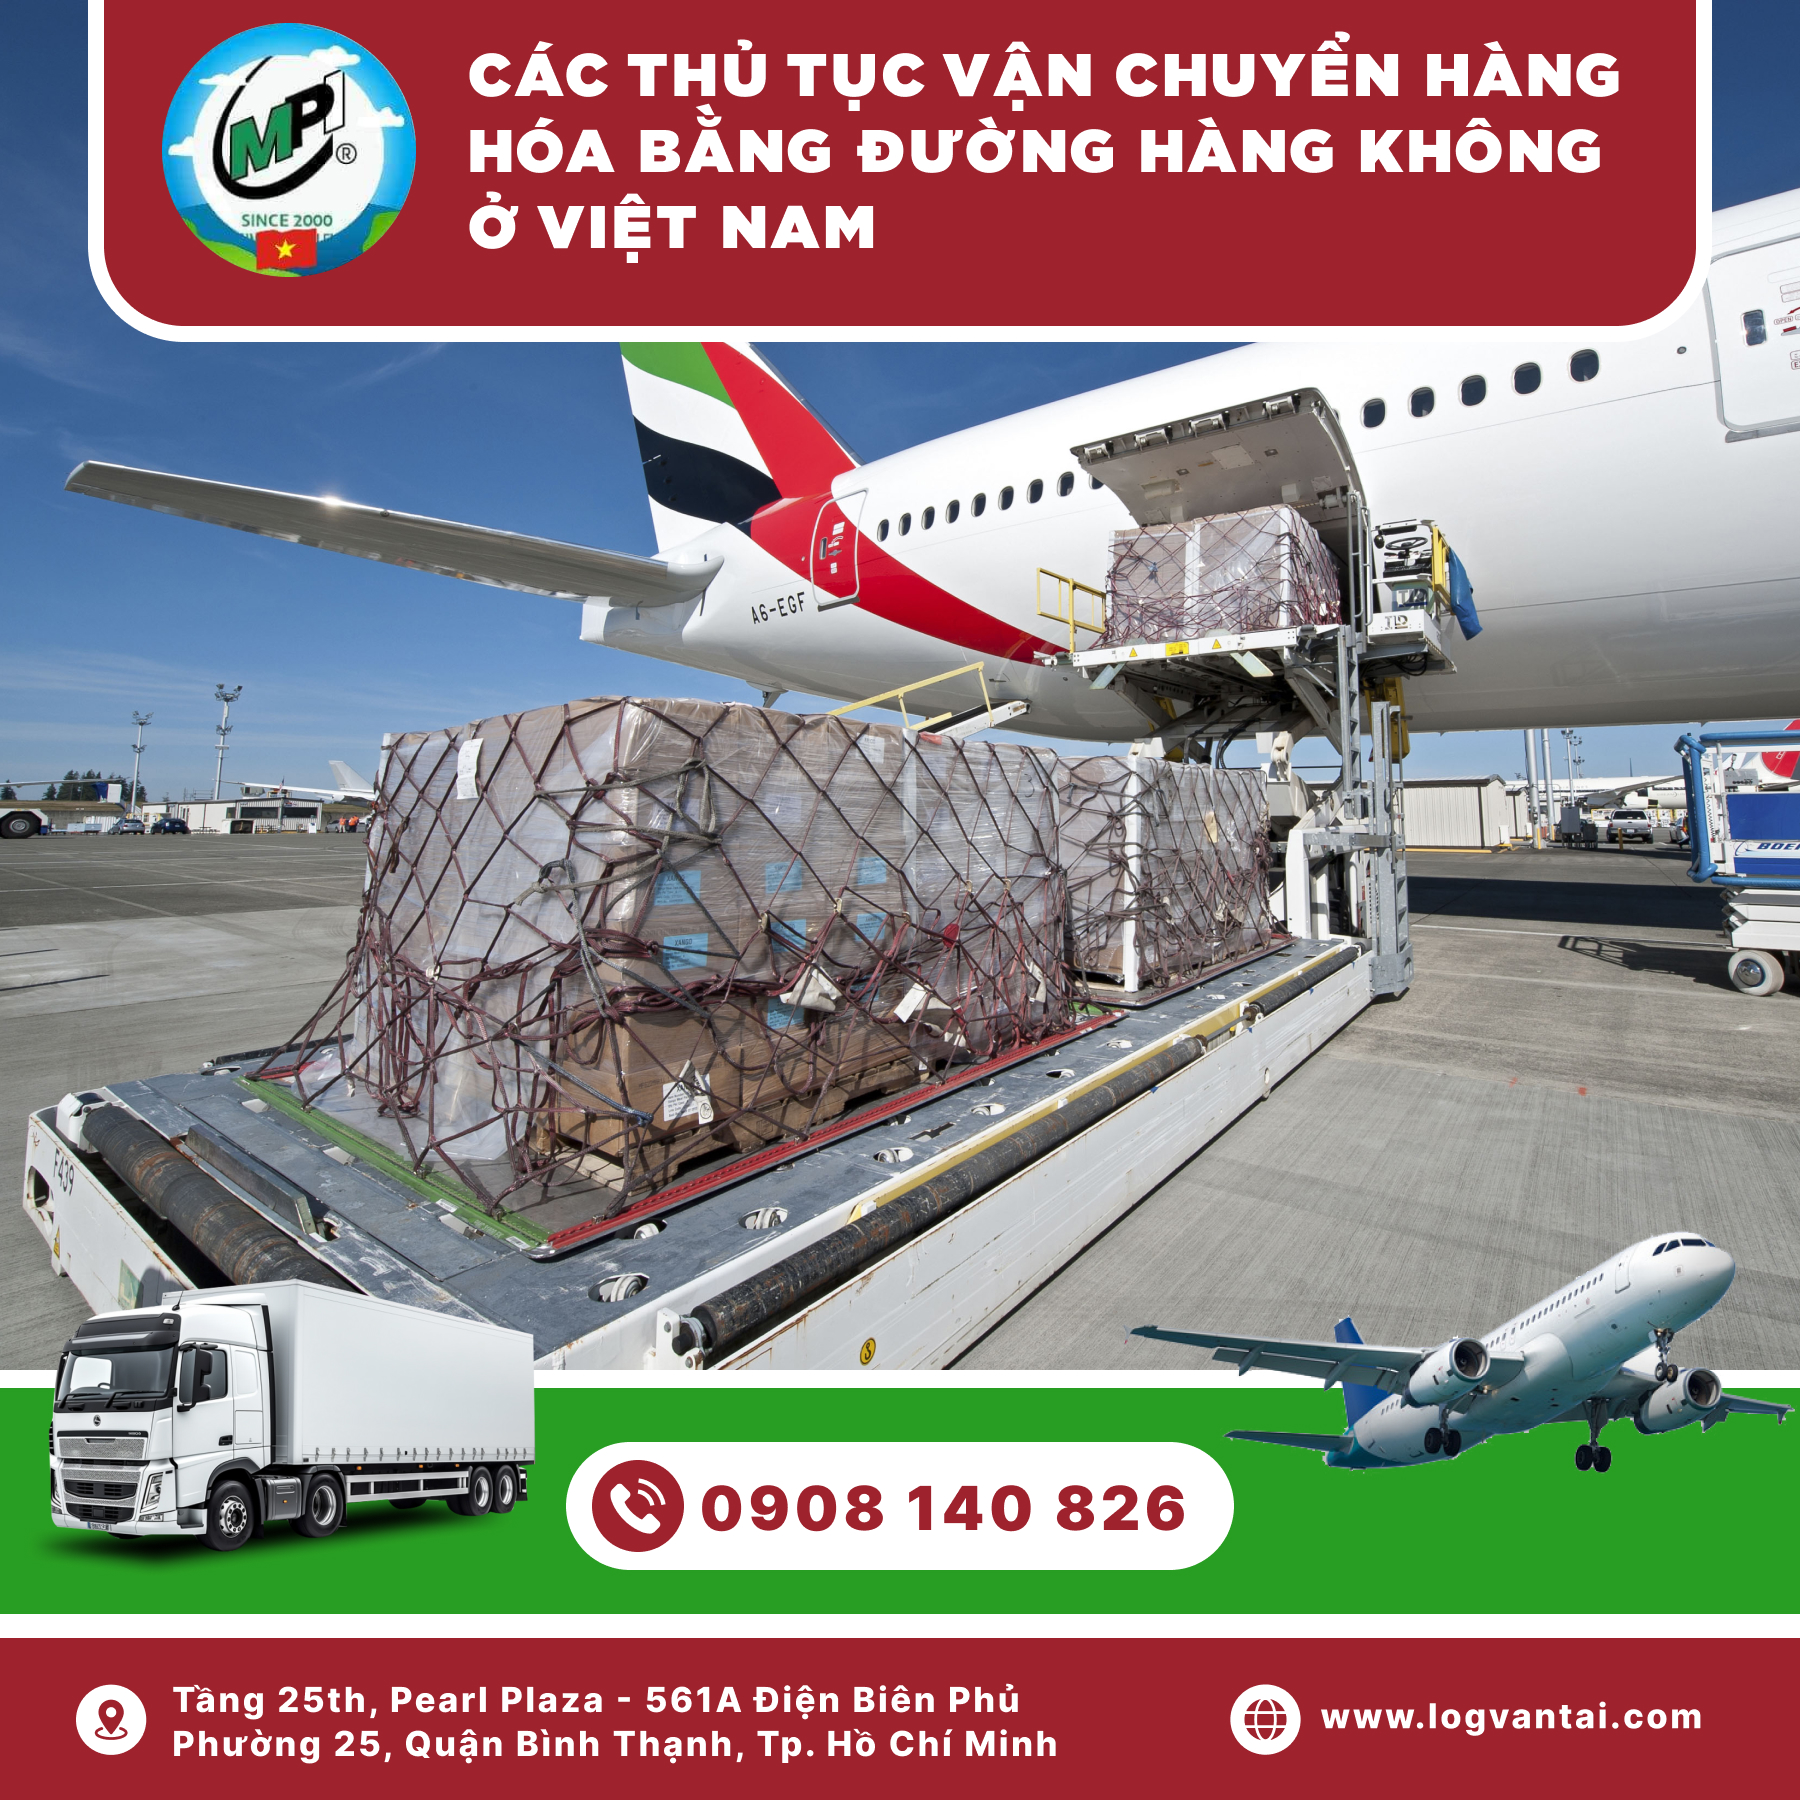 Các thủ tục vận chuyển hàng hóa bằng đường hàng không ở Việt Nam